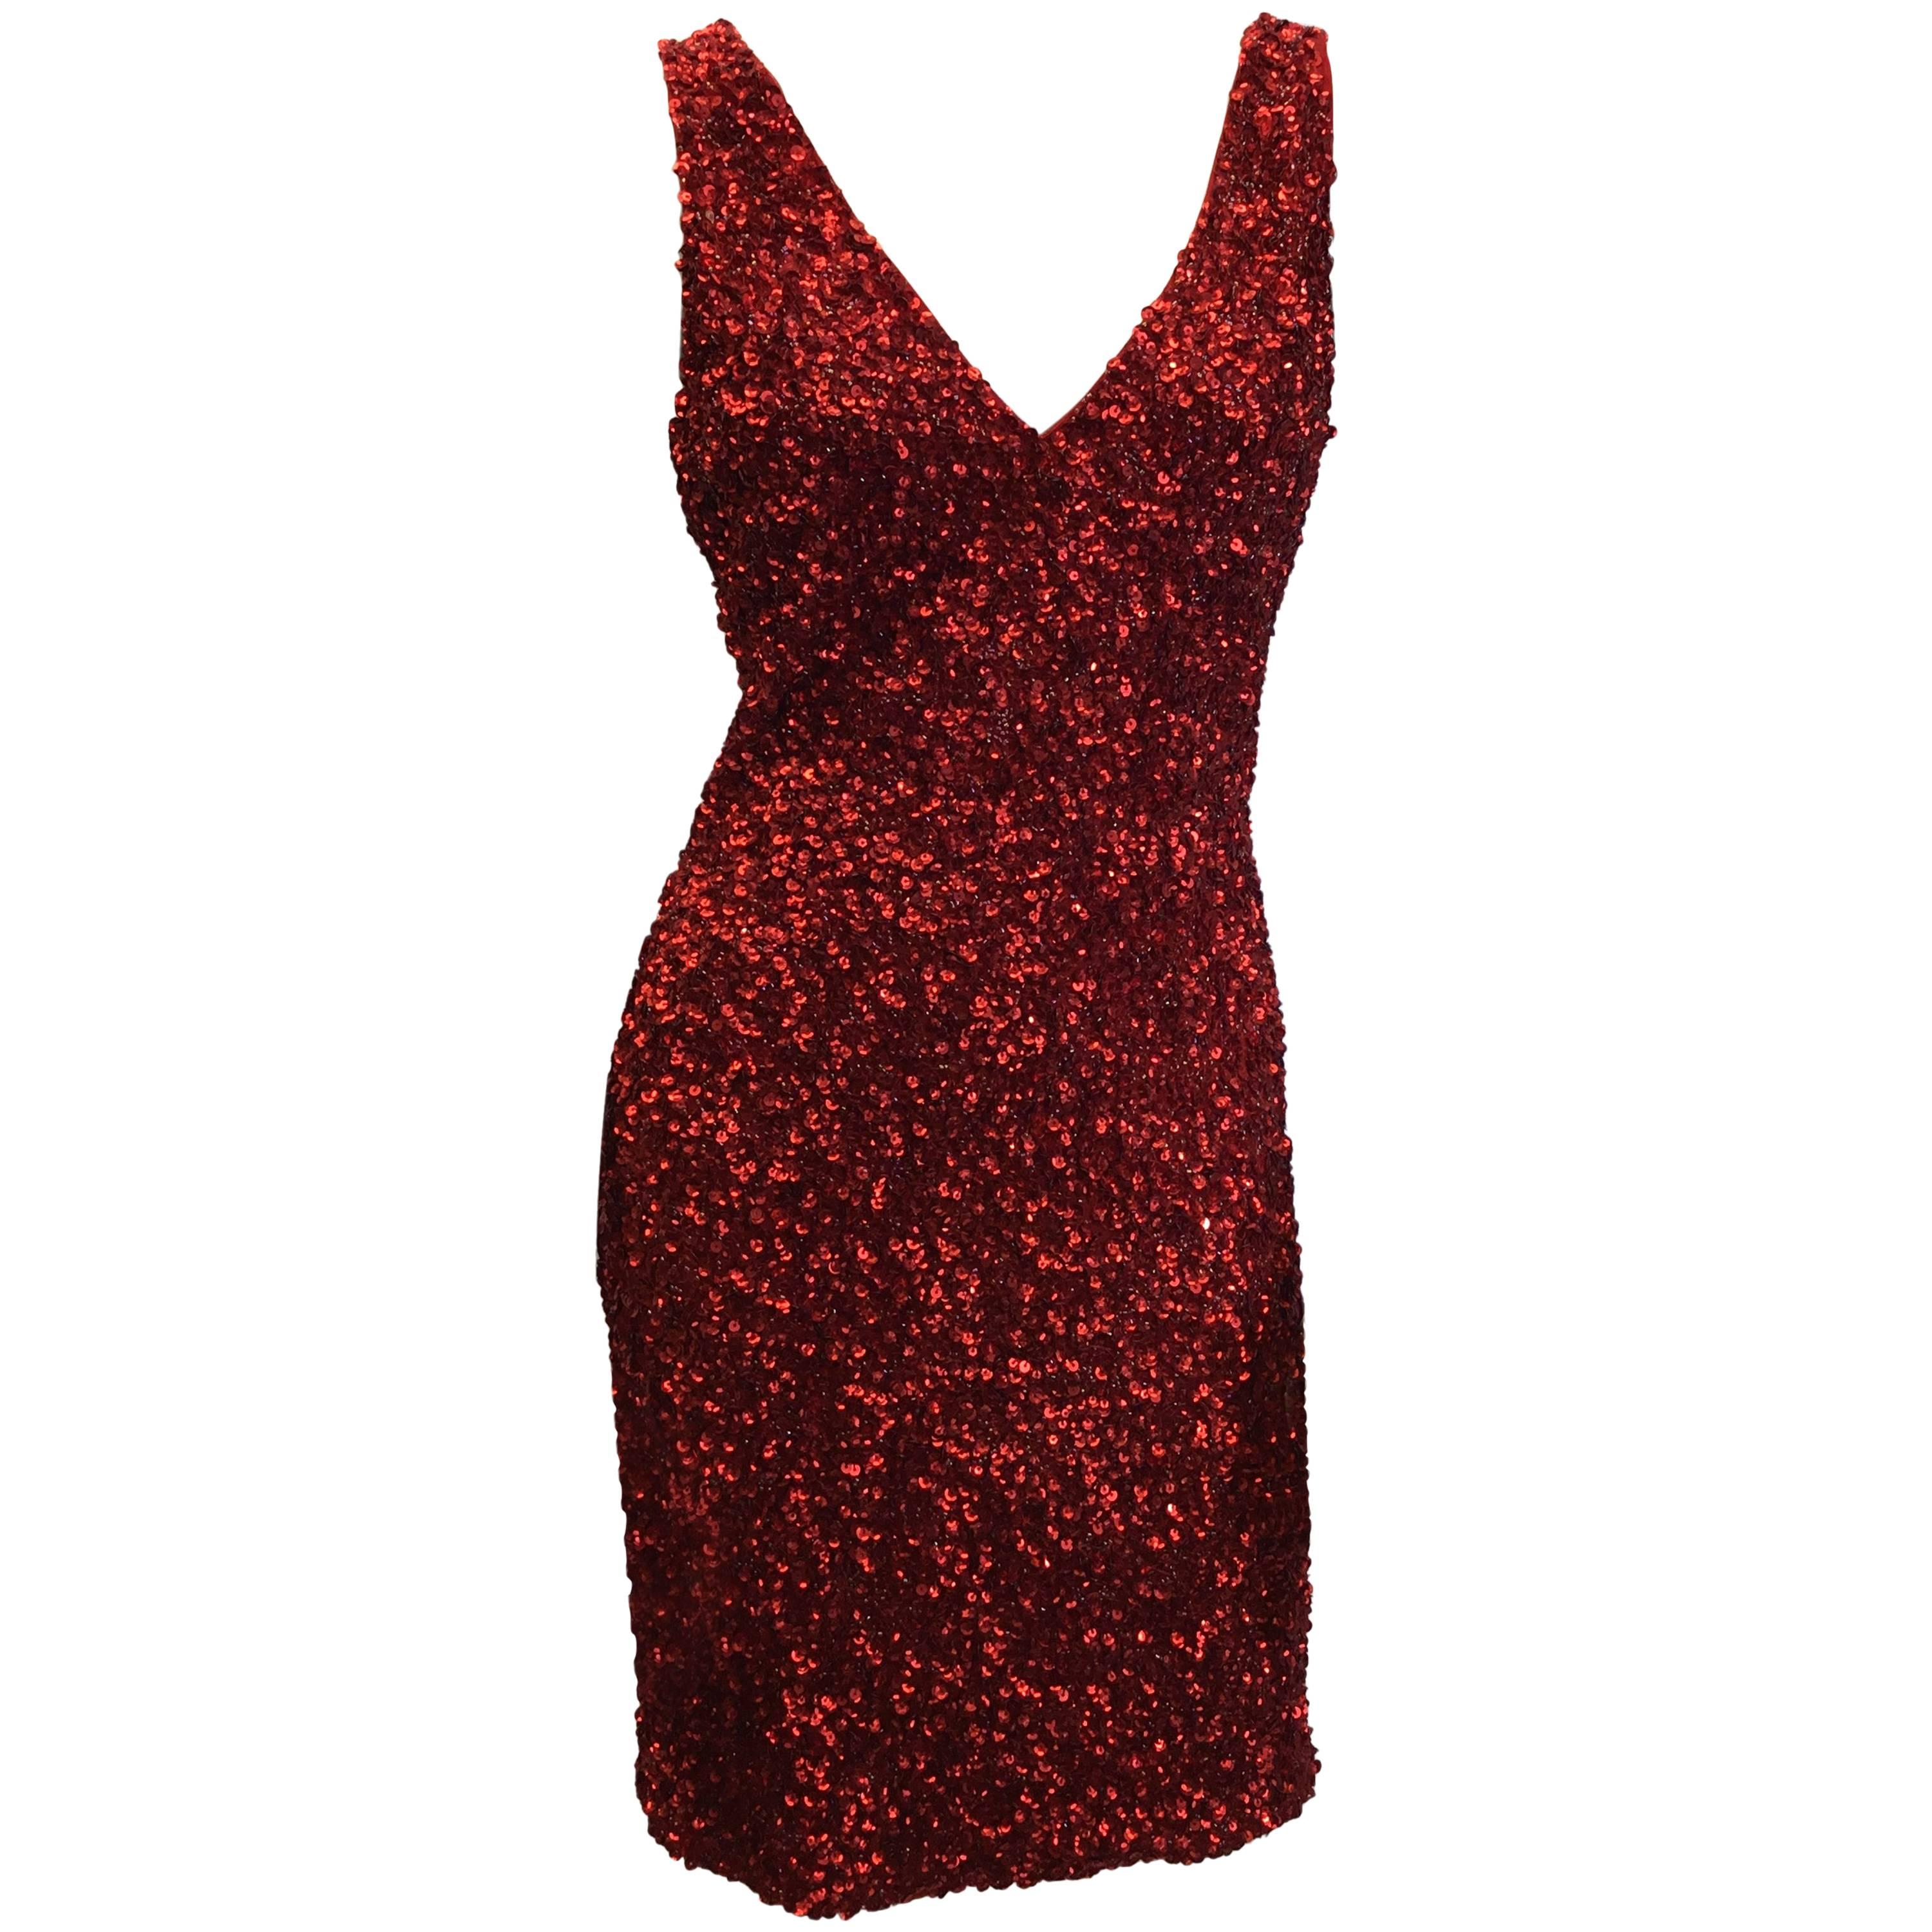 Parker Red Sequin Dress For Sale At 1stdibs Parker Sequin Dress 